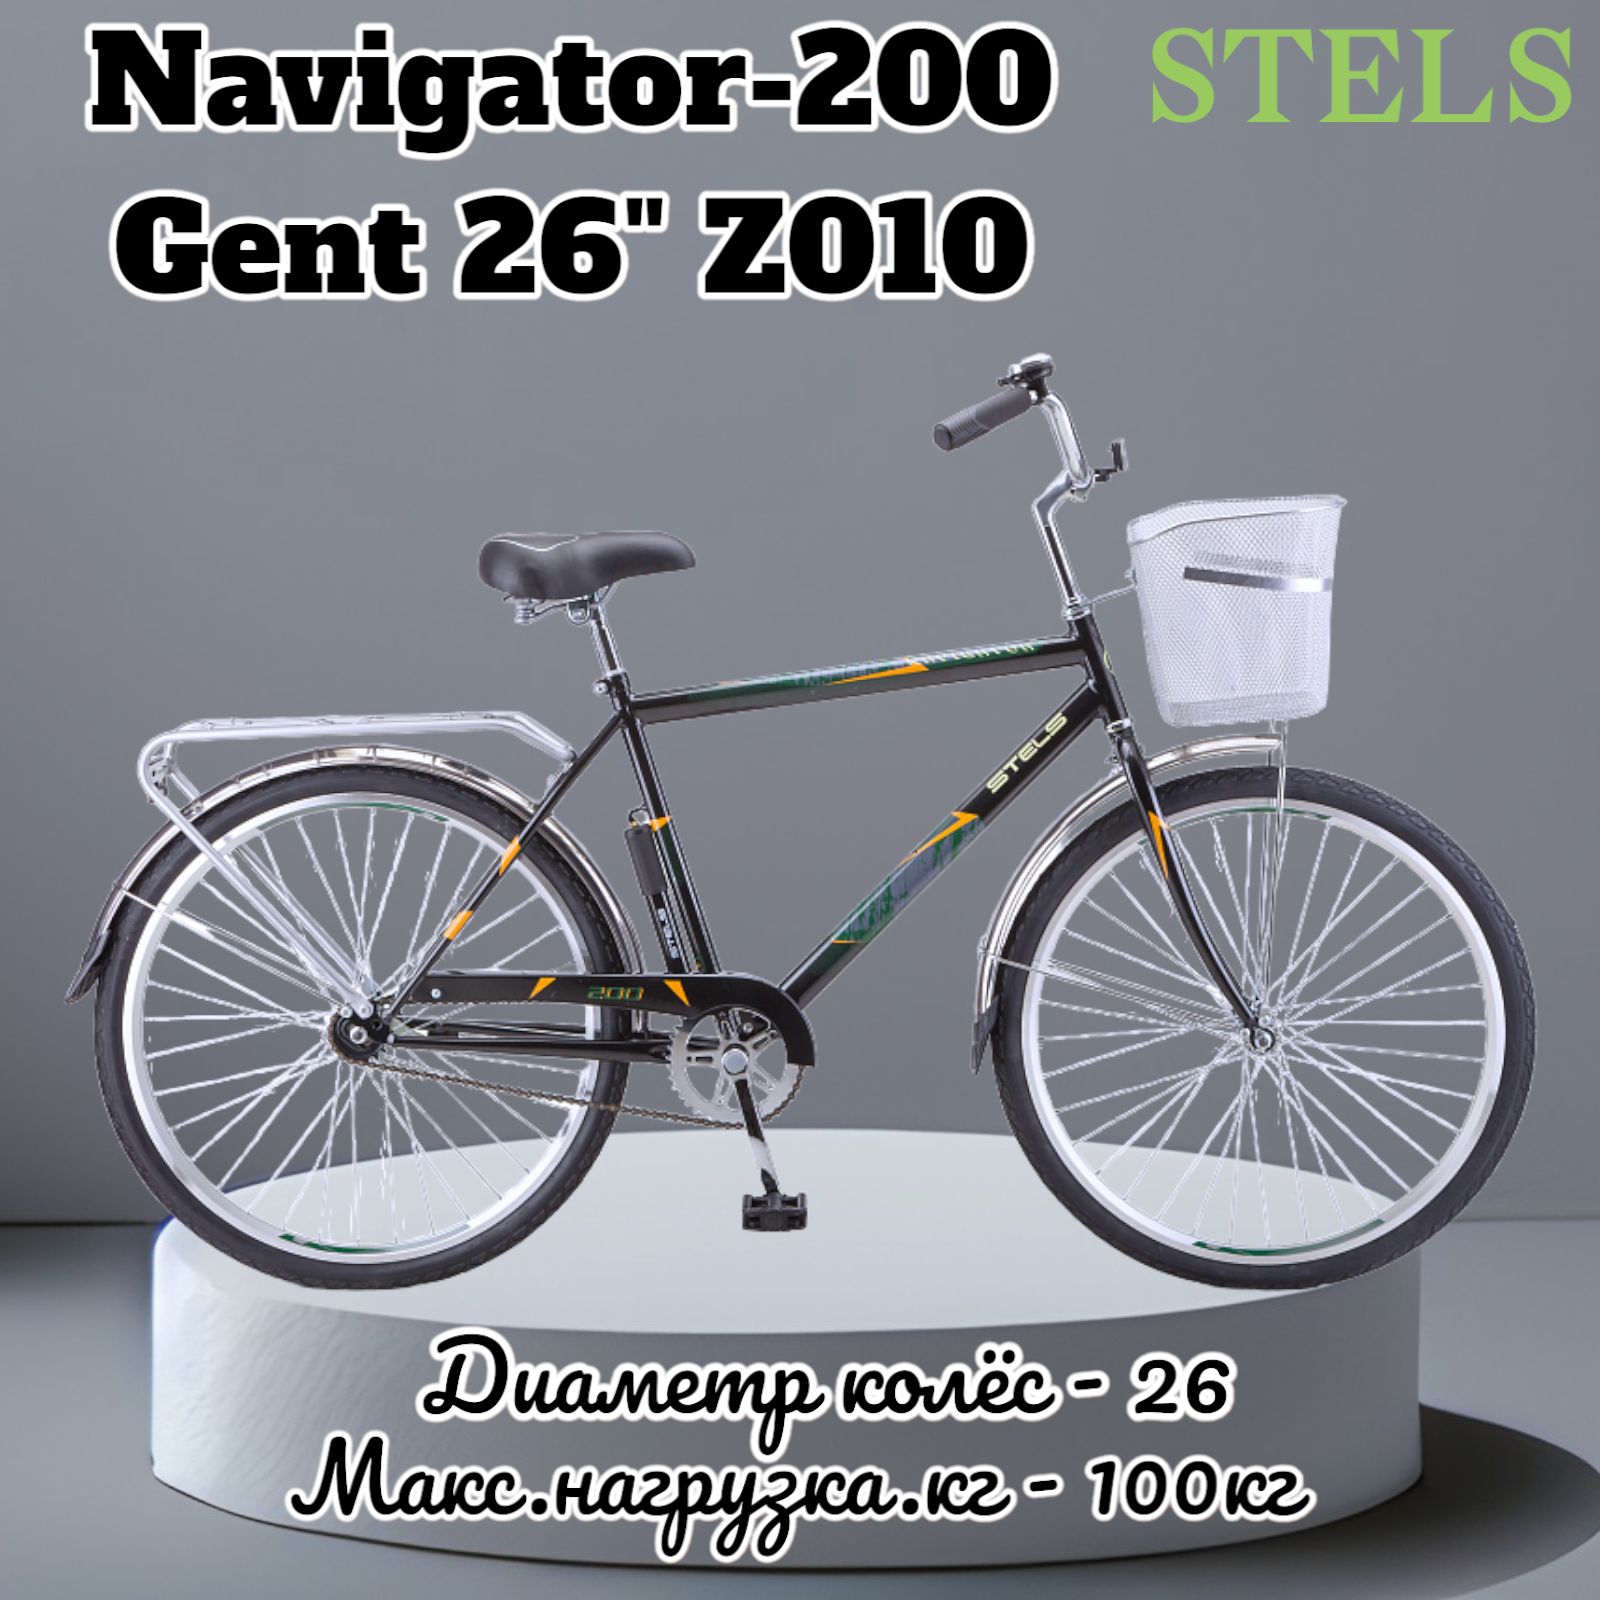 Stels Navigator 200 Gent 26" z010 чёрный. Navigator-250 v 26" z010. Stels Navigator 250 Gent 26. Велосипед stels Navigator 210 Gent 26. Стелс благовещенск